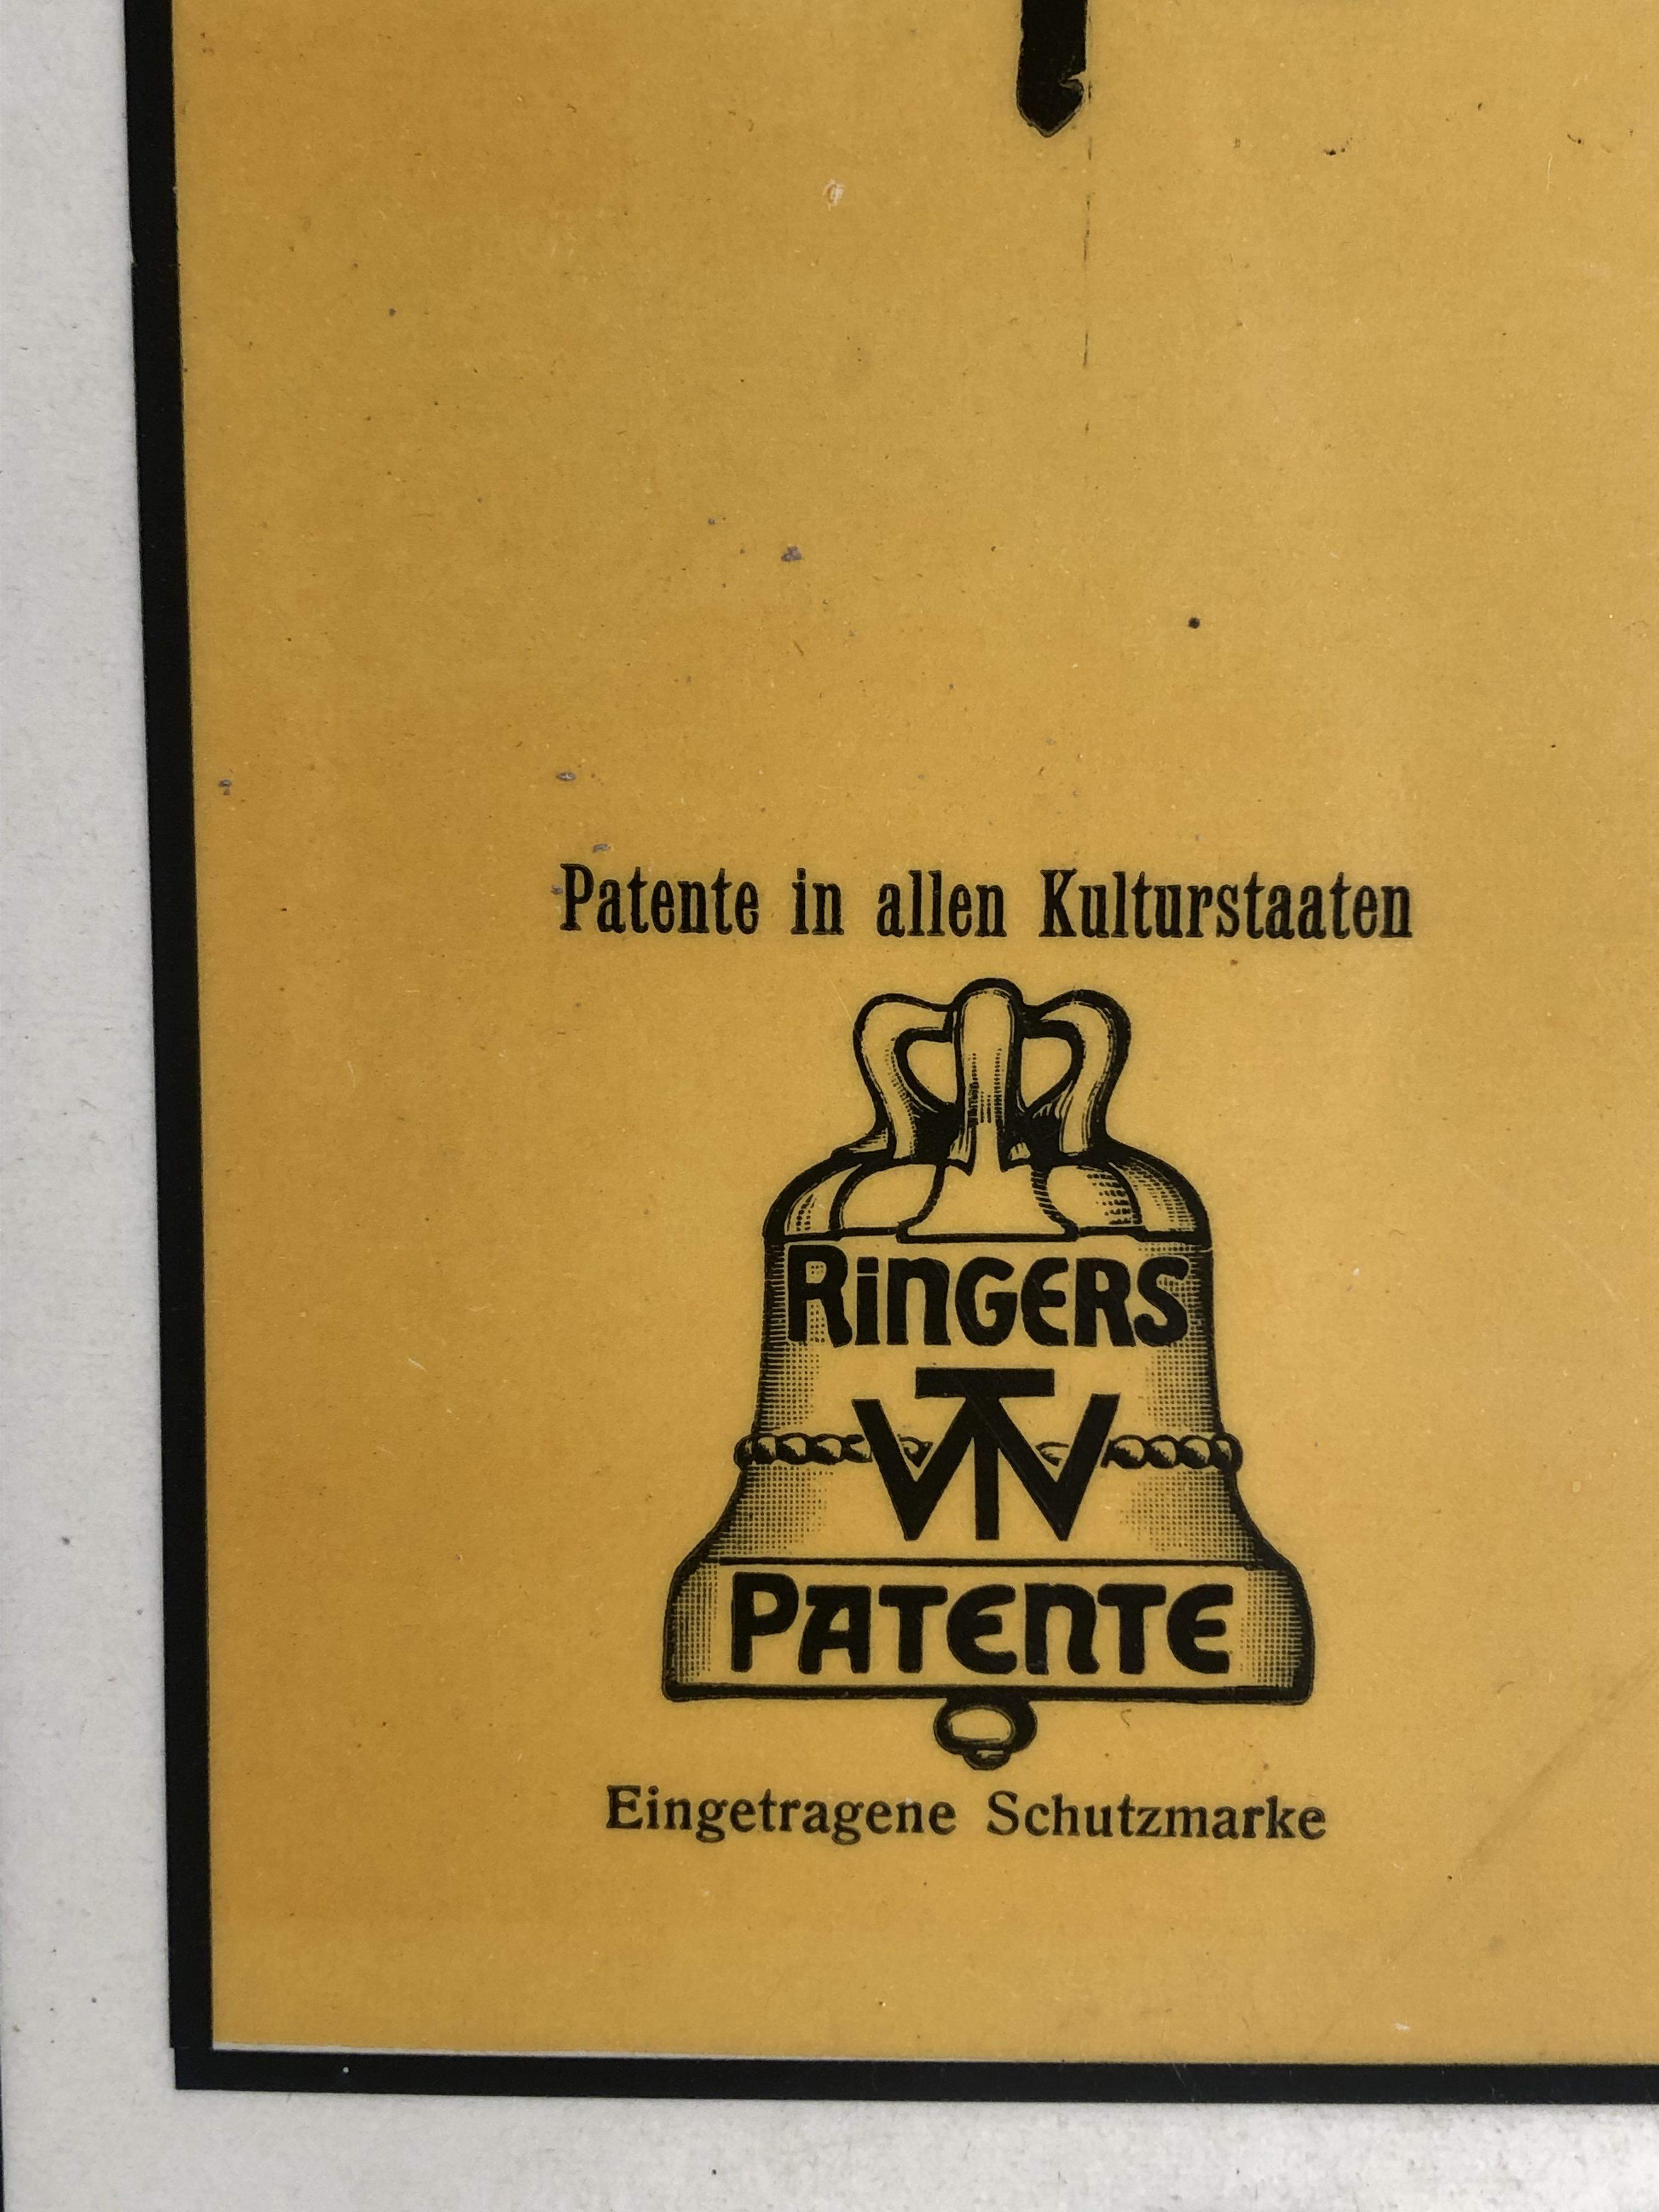 Patent Bügel "Ringer" Blechschild